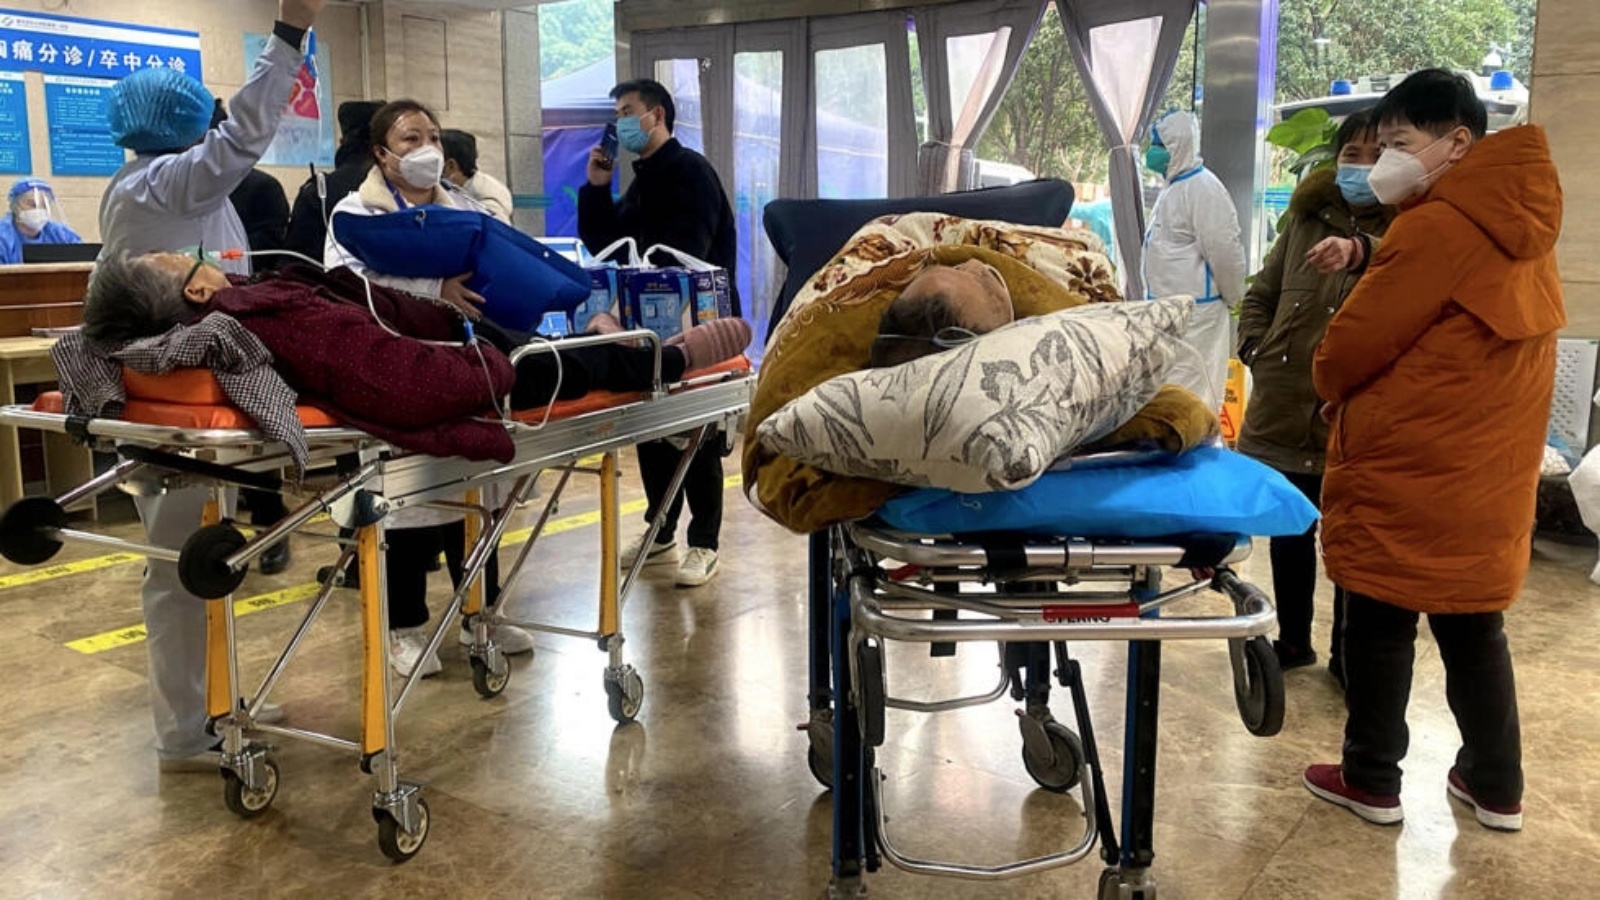 مرضى كوفيد-19 ينتظرون في غرفة الطوارئ بمستشفى في تشونغتشينغ، جنوب غرب الصين، في 22 ديسمبر 2022